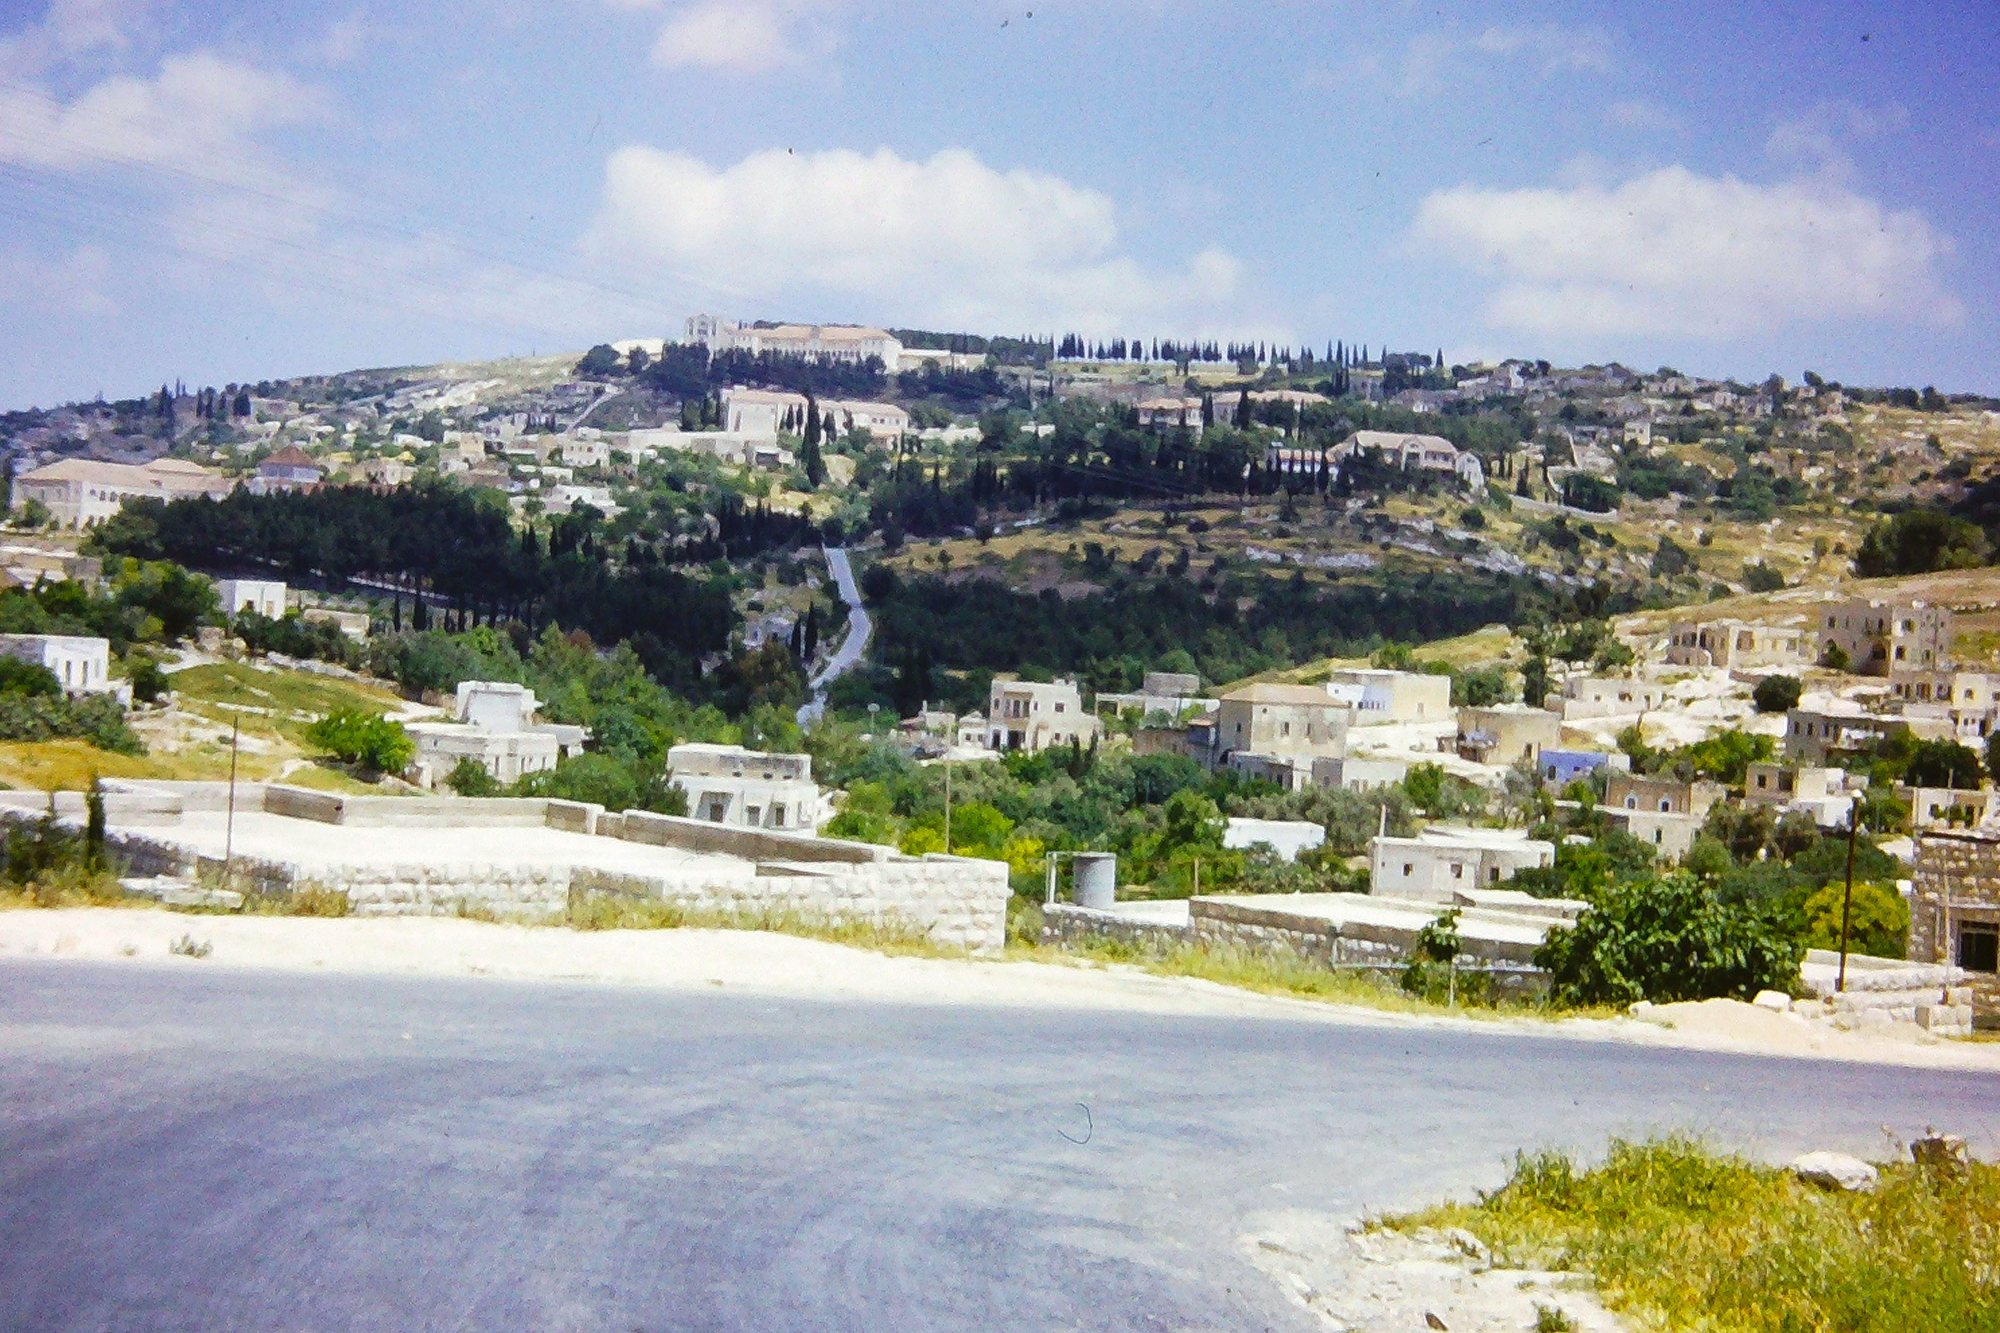  Israel Hillside, 1951